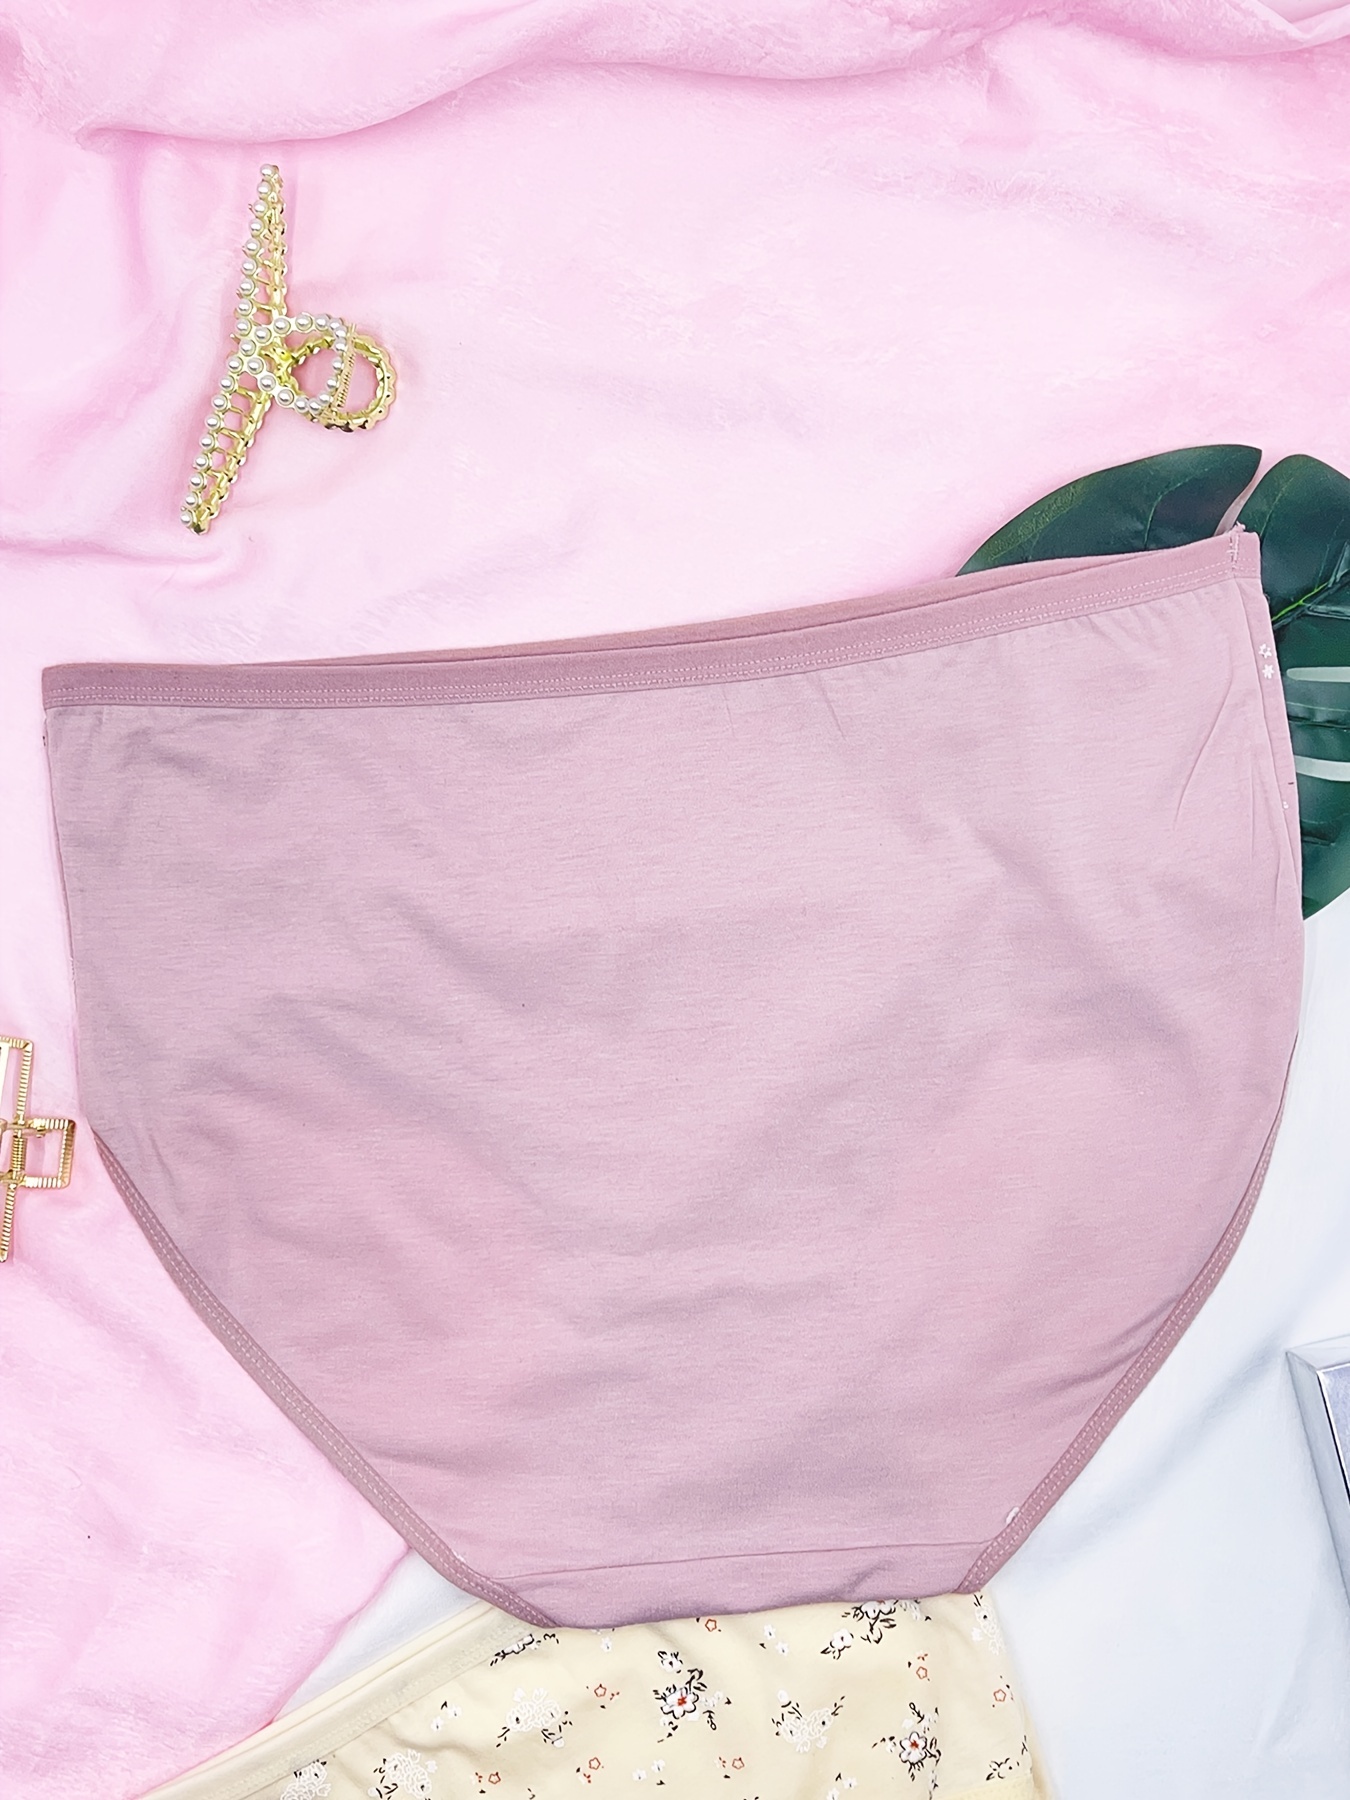 Panty – thezoo me underwear